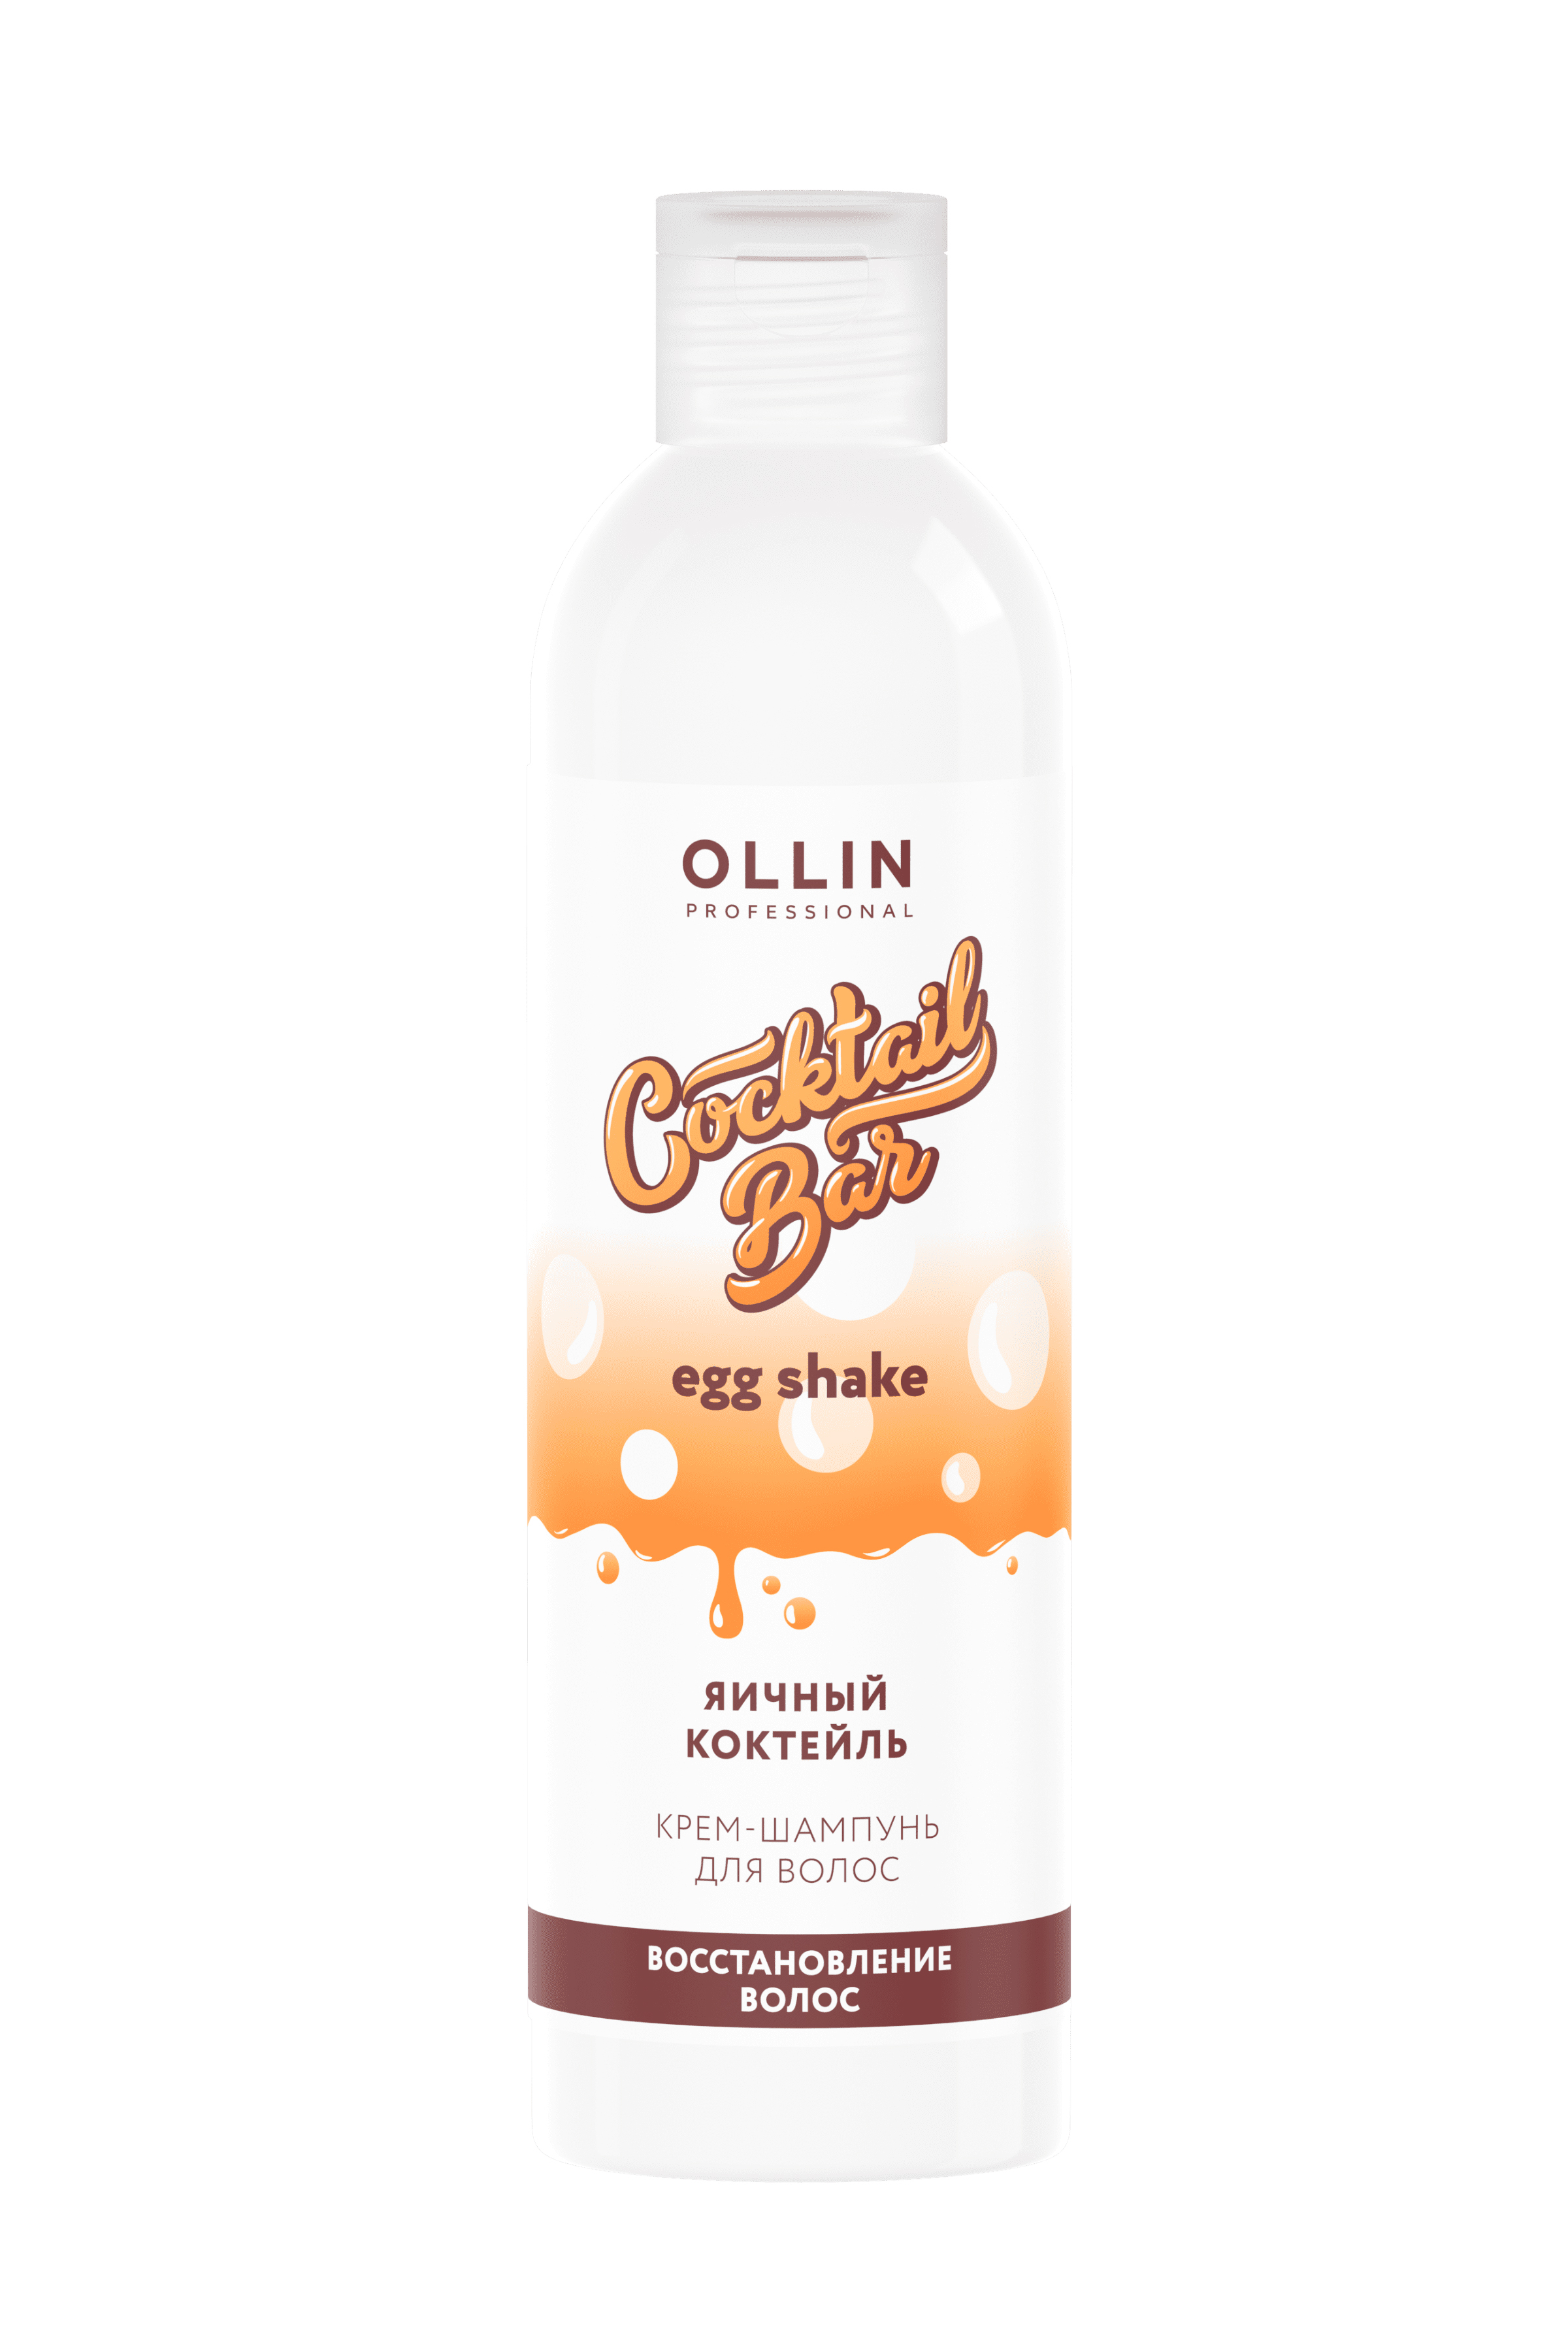 OLLIN Cocktail BAR Крем-шампунь "Яичный коктейль" блеск и восстановление волос 400 мл